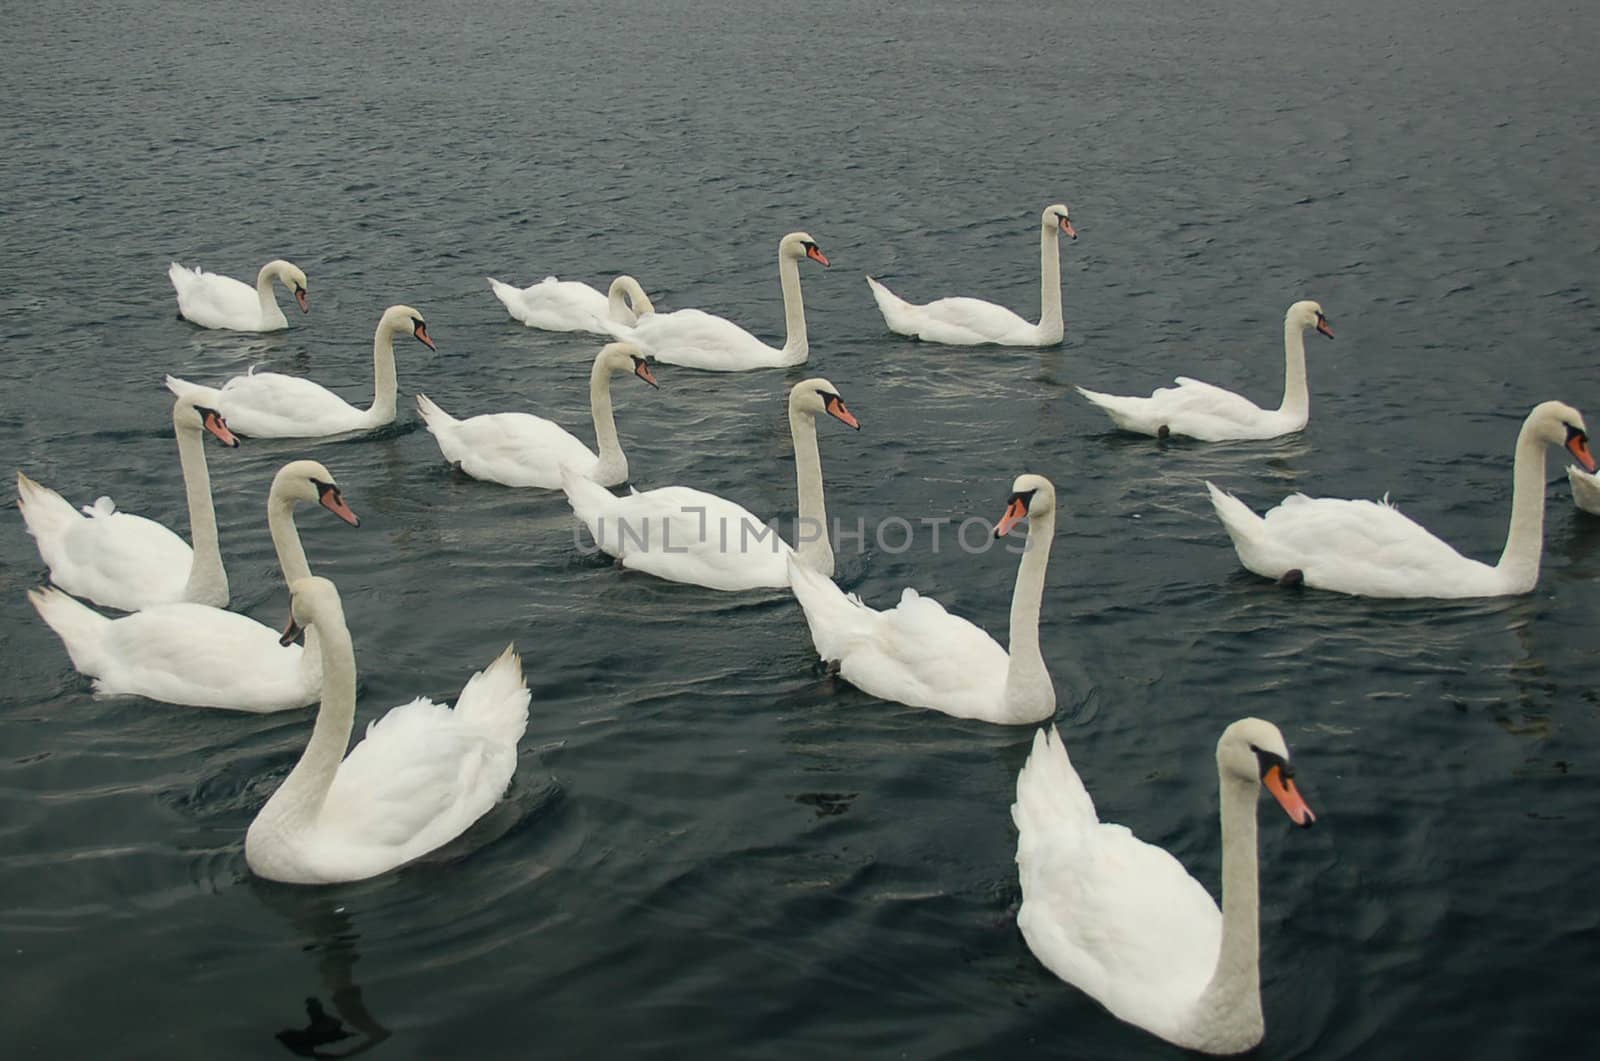 Fourteen white swans on the lake